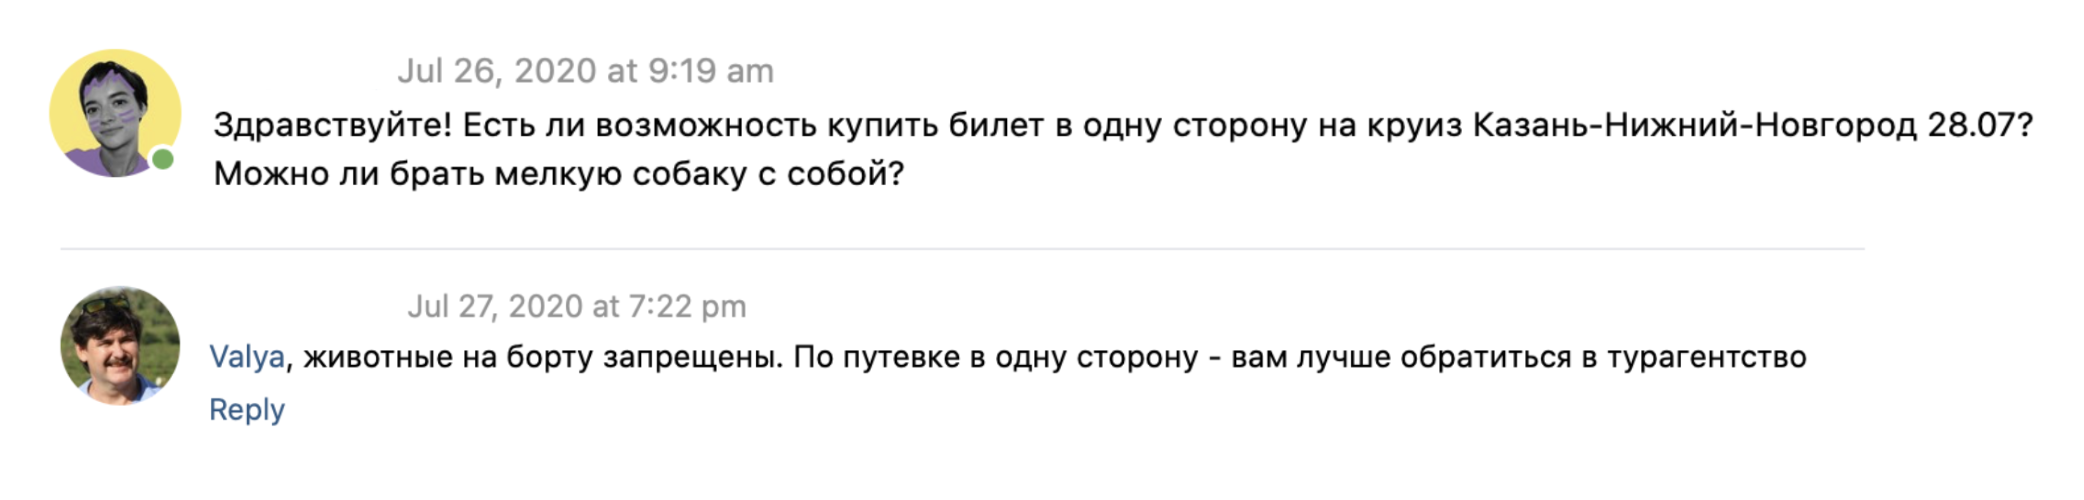 Администратор группы «Теплоход „Павел Бажов“» во «Вконтакте» ответил, что животных на борт теплохода брать нельзя